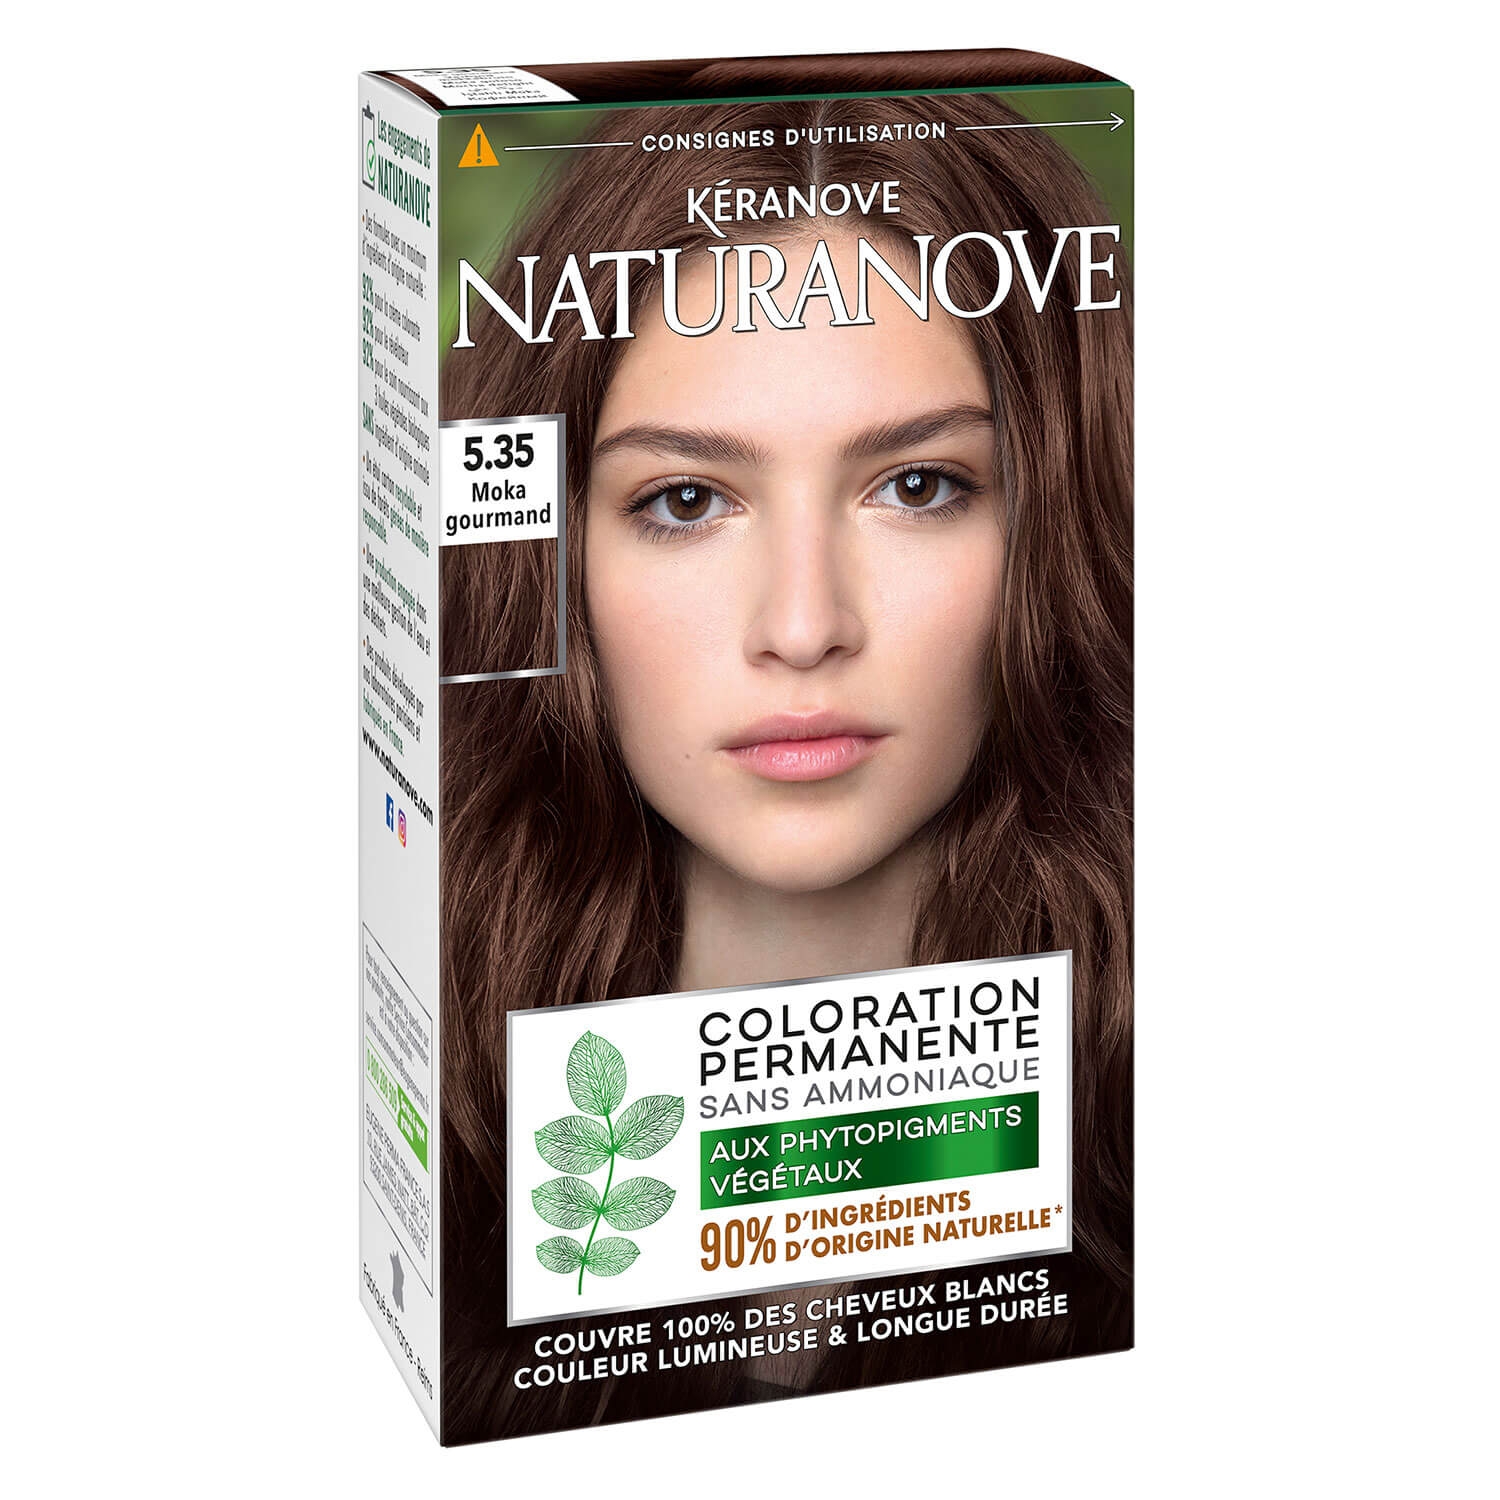 Produktbild von Naturanove - Dauerhafte Haarfarbe Moka Delight 5.35